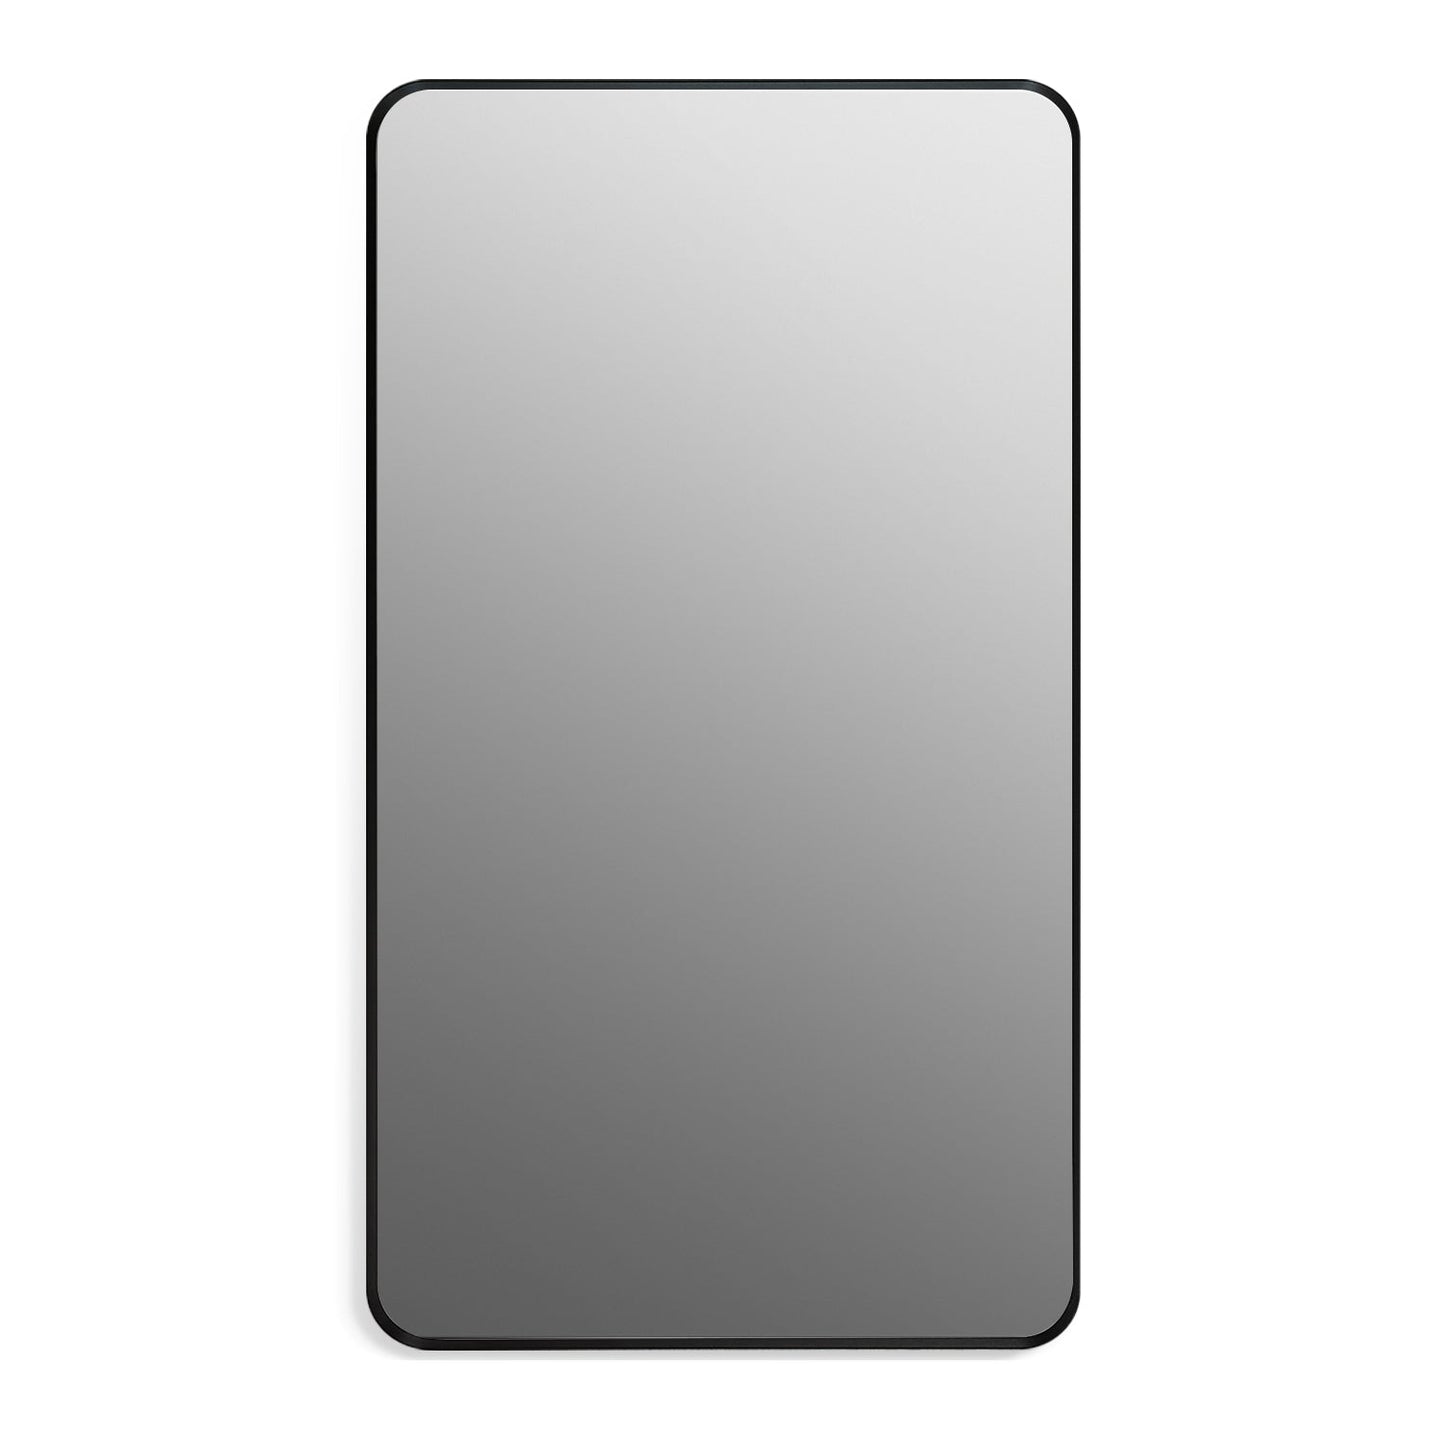 Nettuno 18" Rectangle Bathroom/Vanity Matt Black Aluminum Framed Wall Mirror